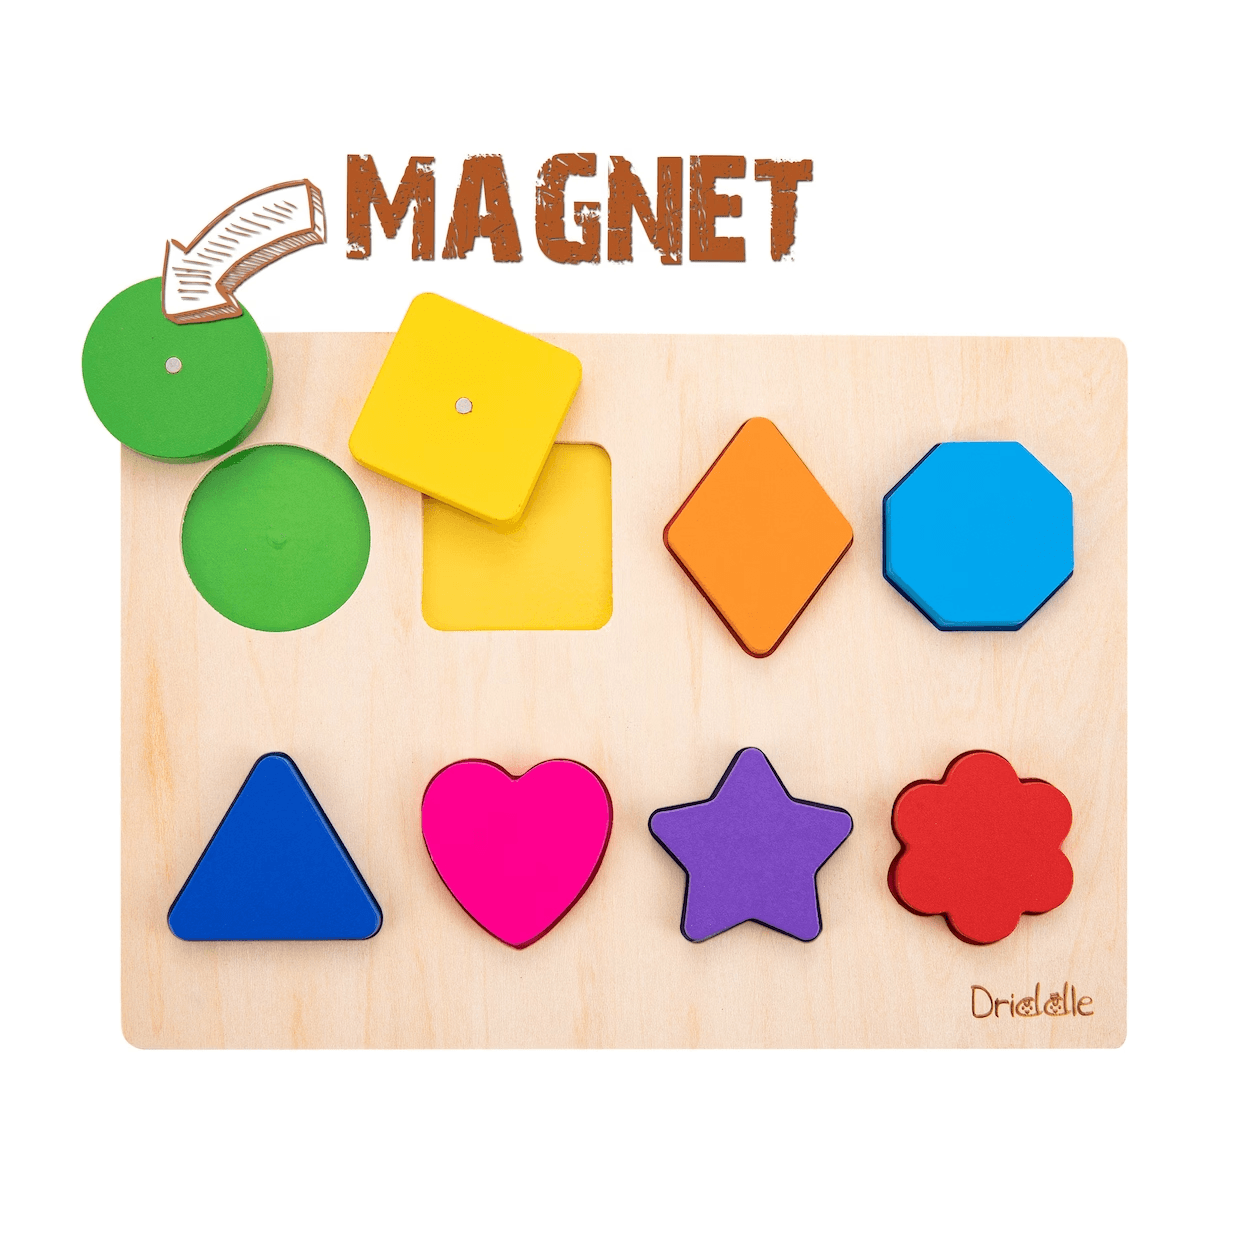 Montessori Driddle4Little Magnetic Wooden Color & Shape Puzzle